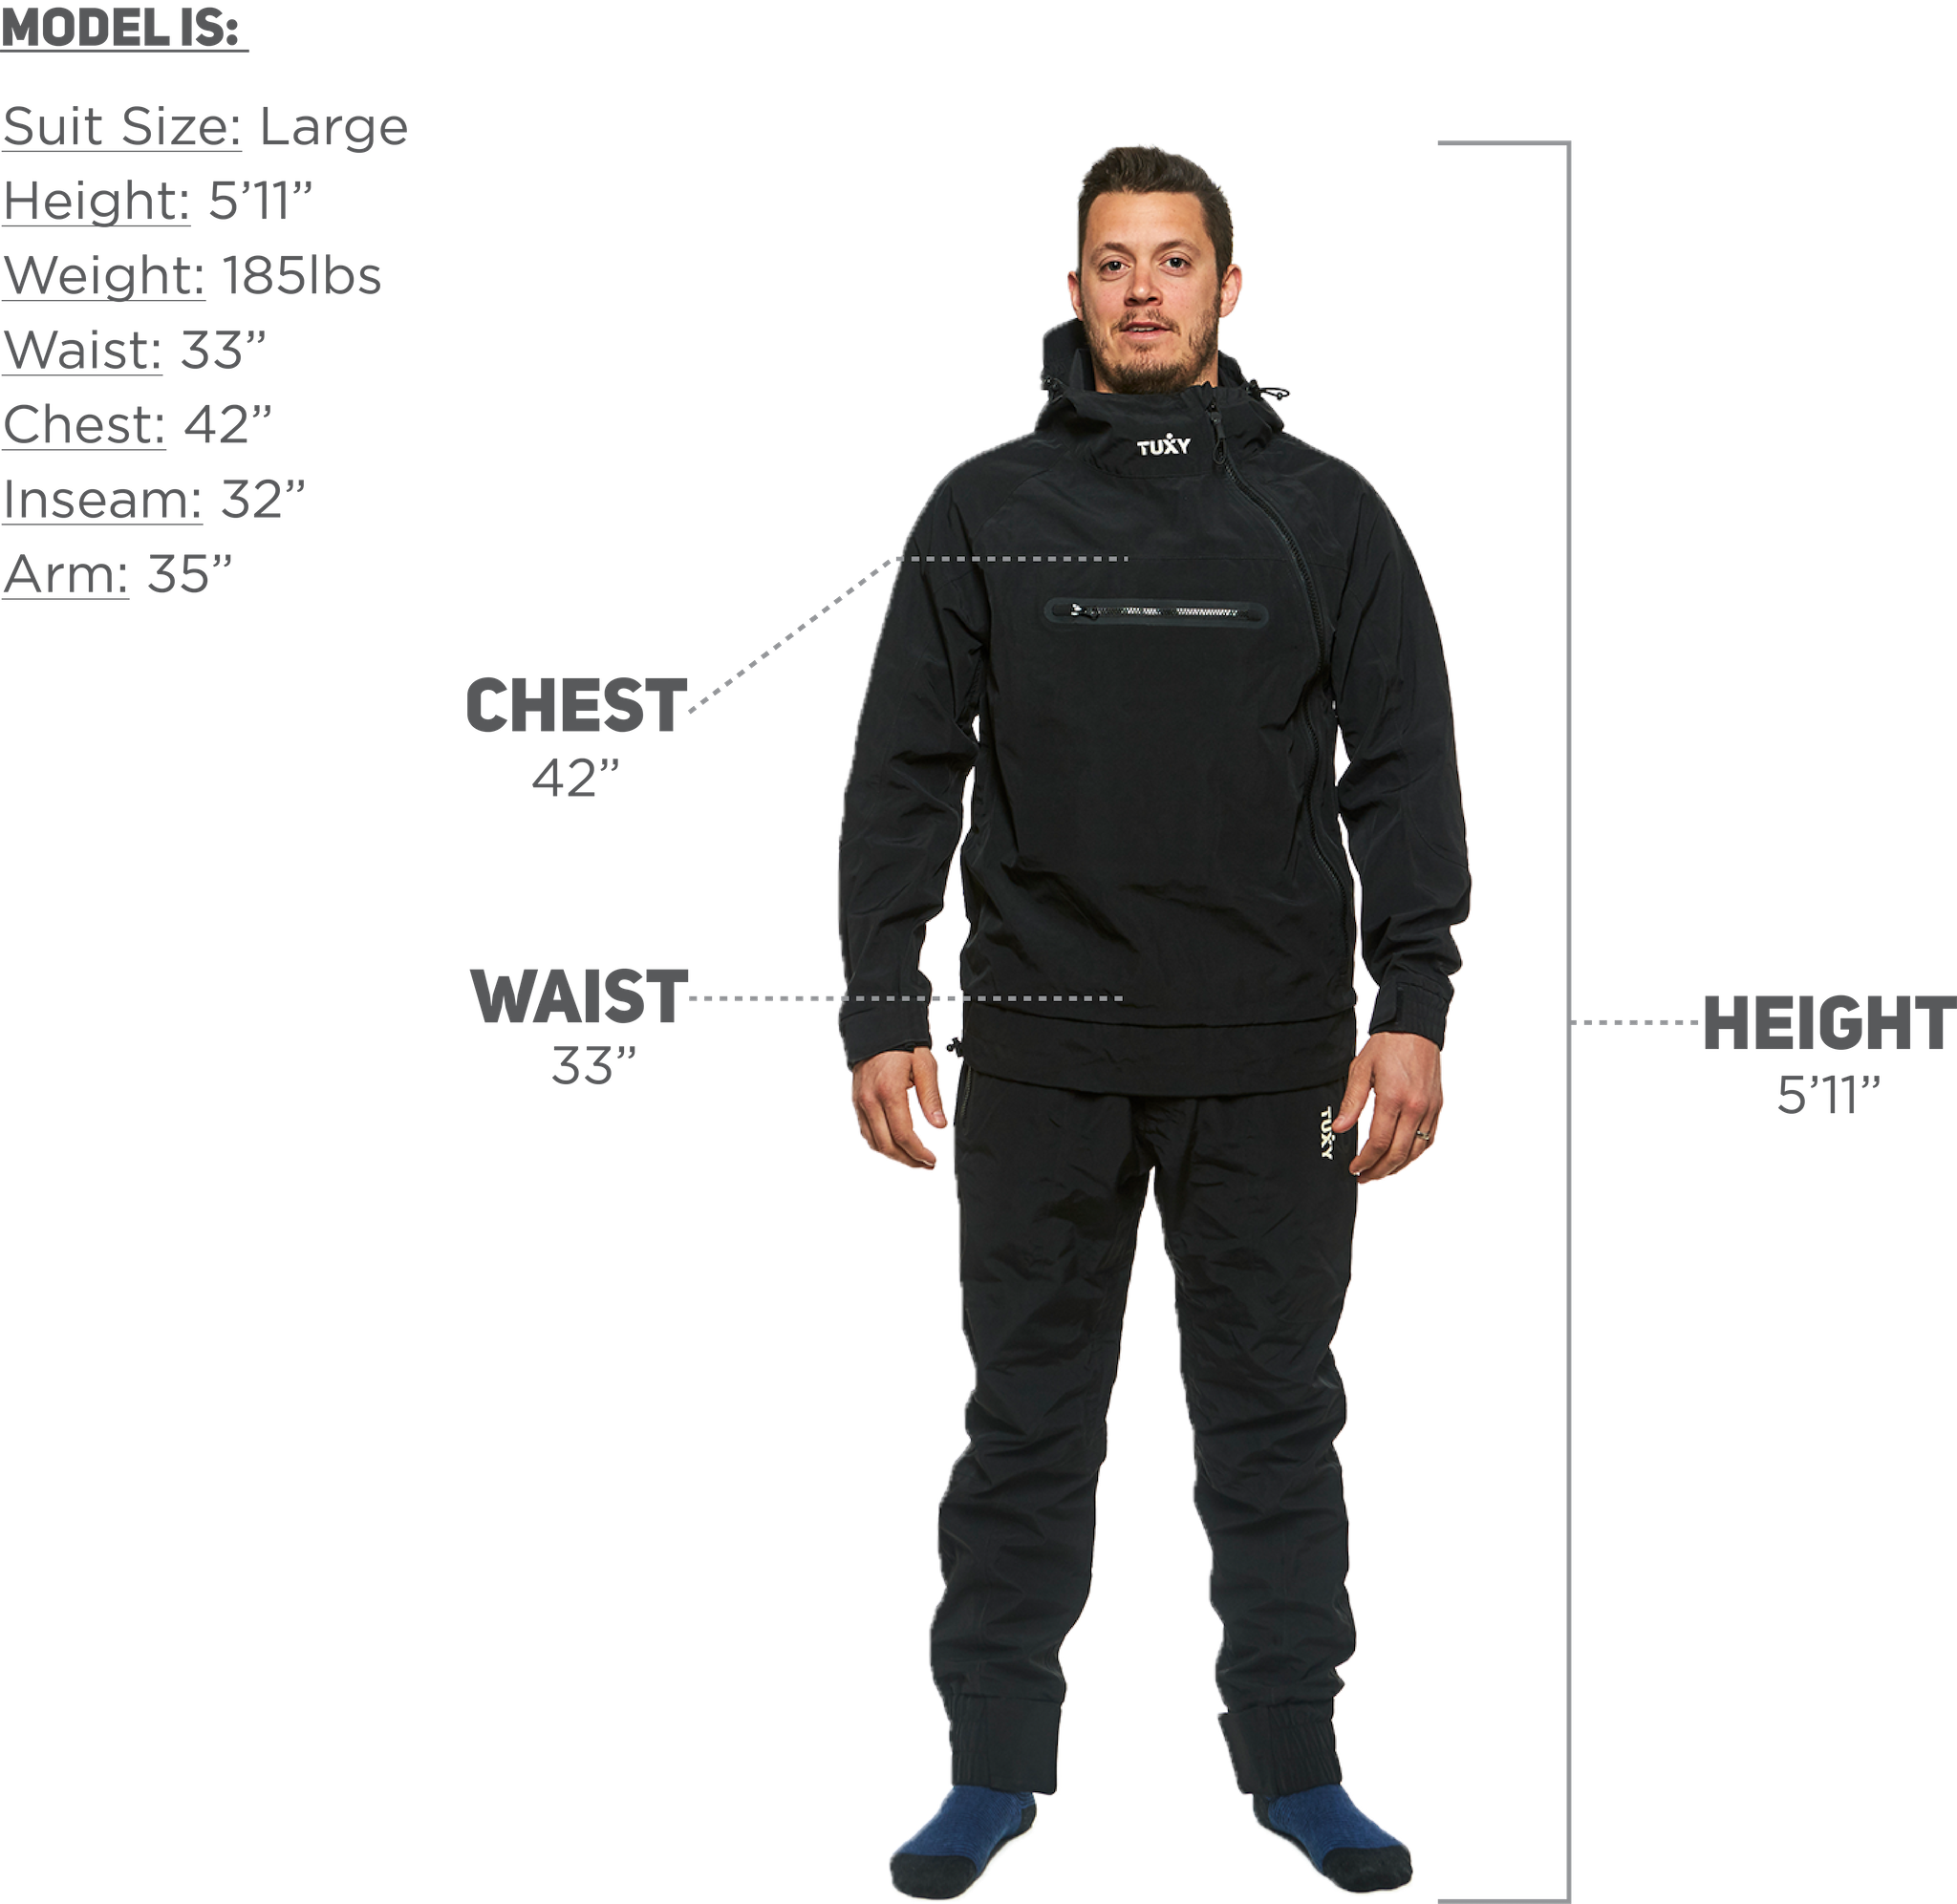 Tuxy storm suit size Large